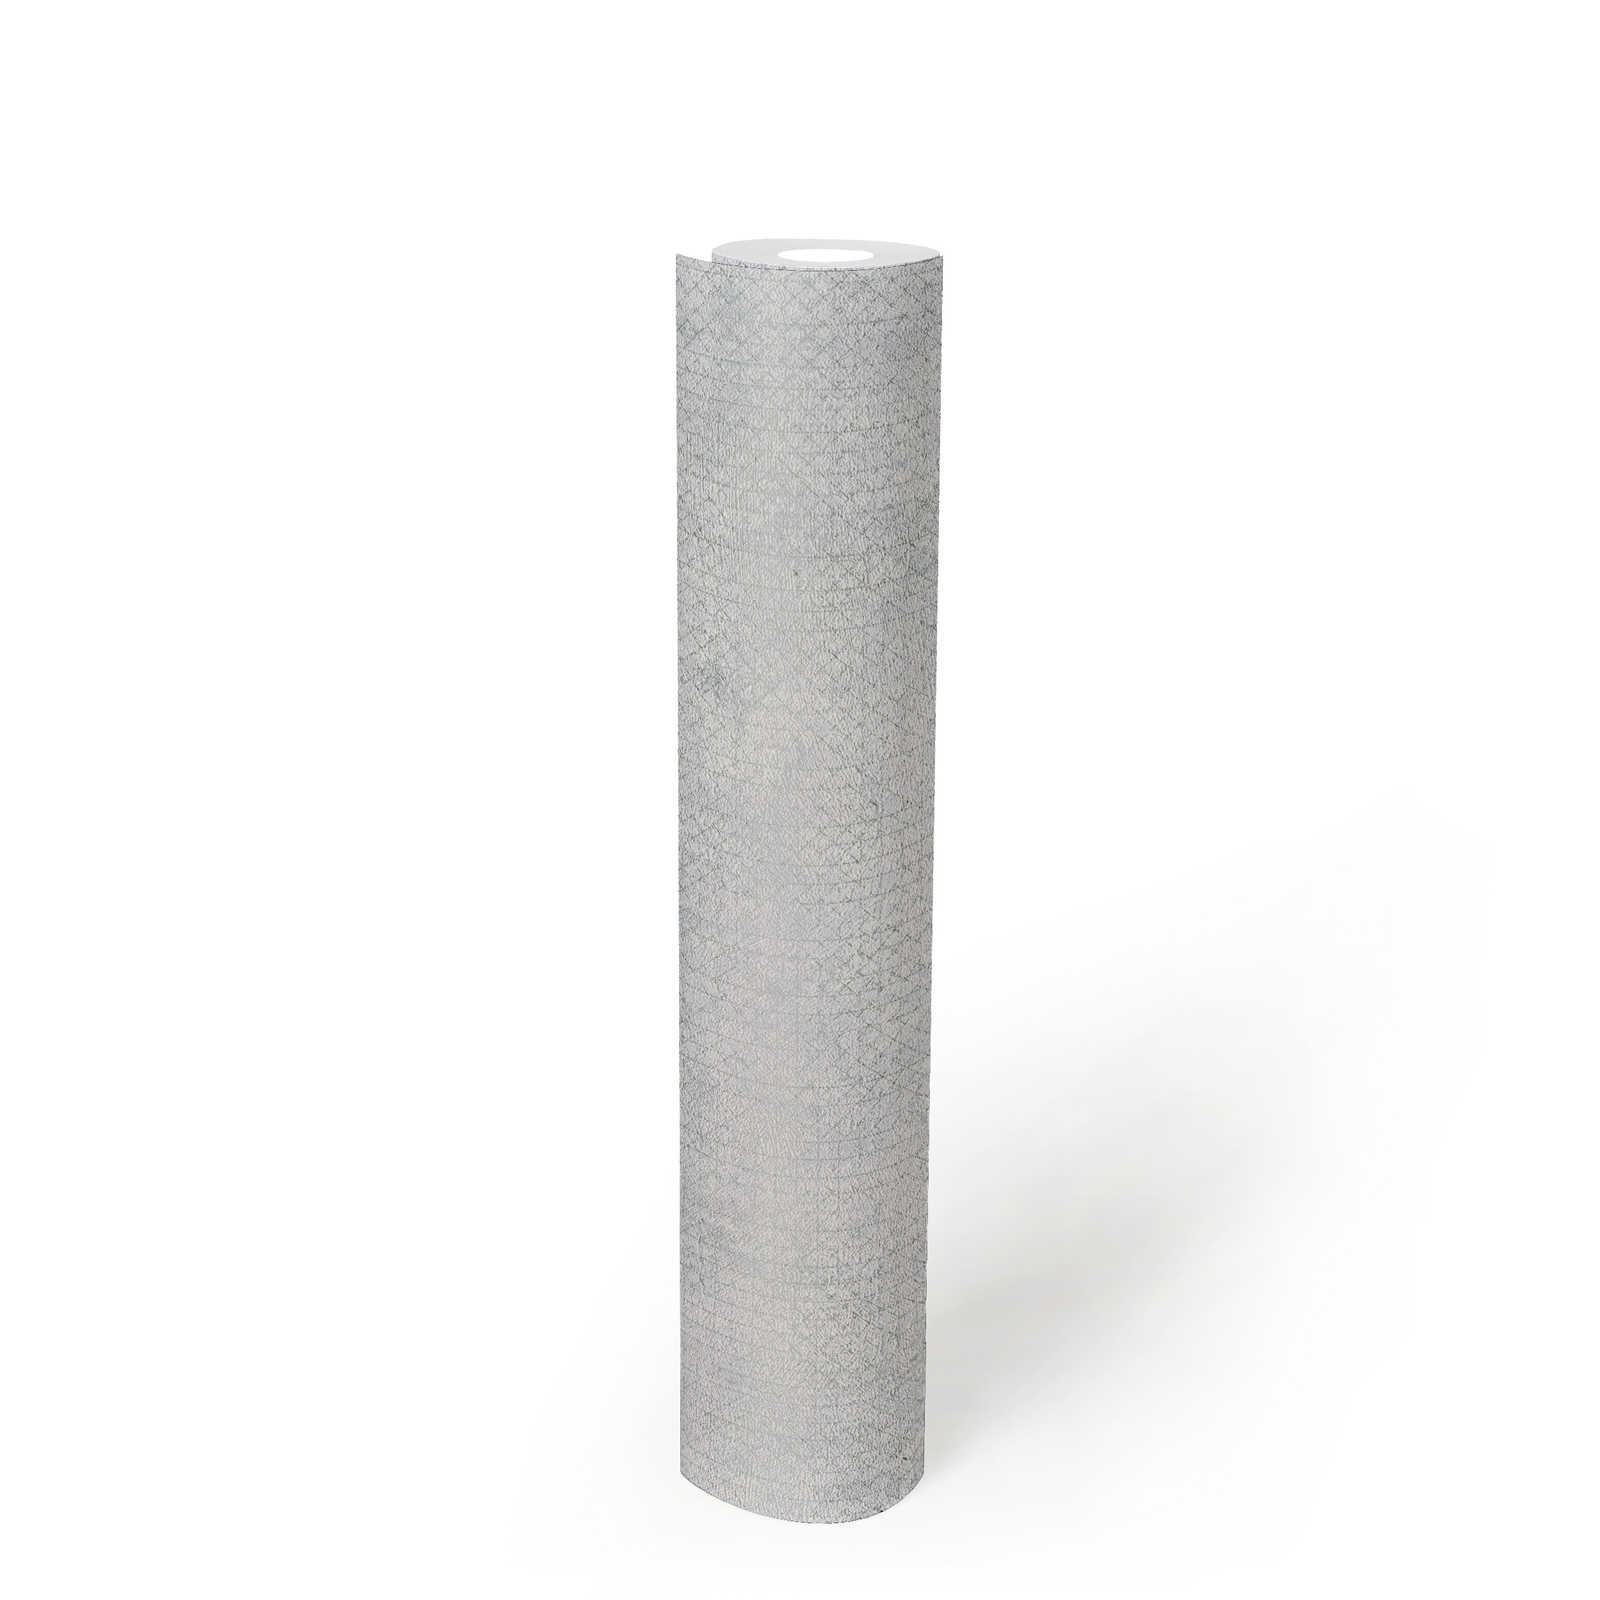             Papier peint intissé gris clair motif métallisé - métallique, gris
        